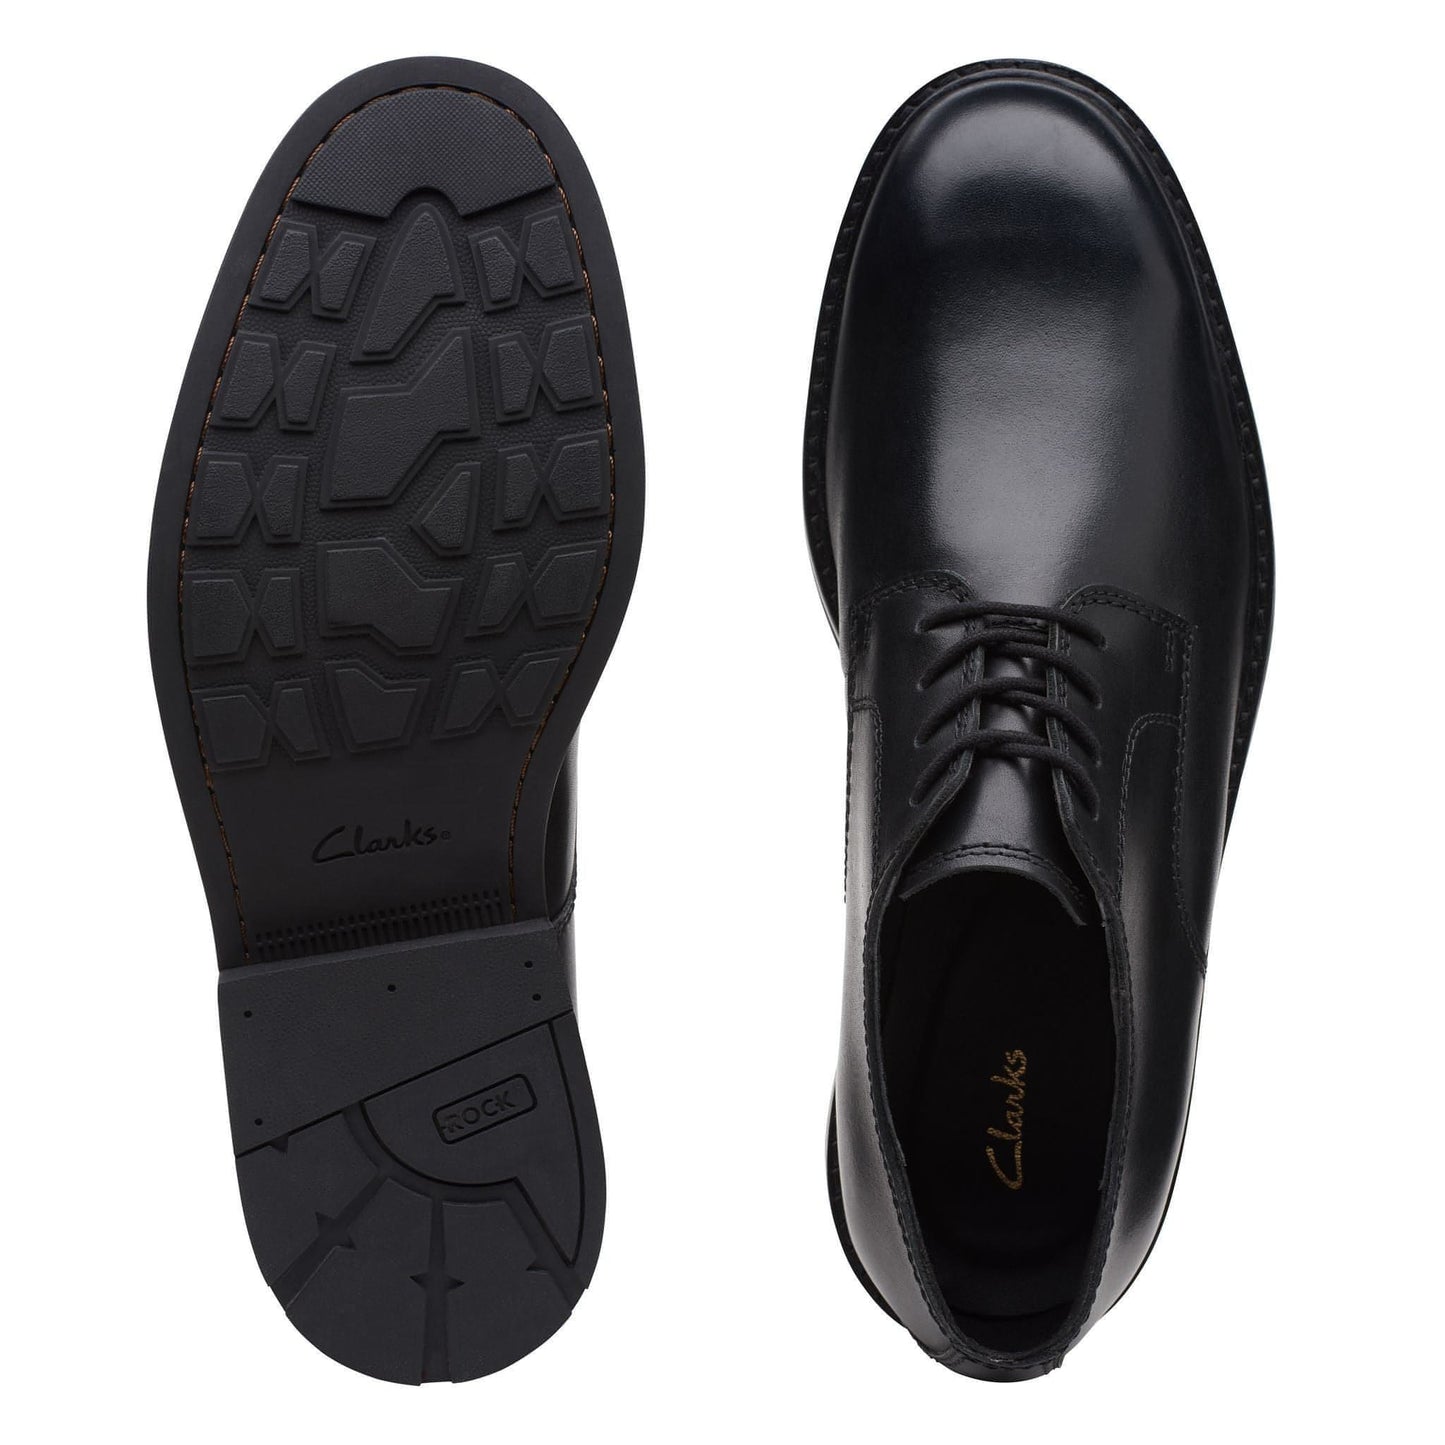 CLARKS vyriški juodi klasikiniai batai